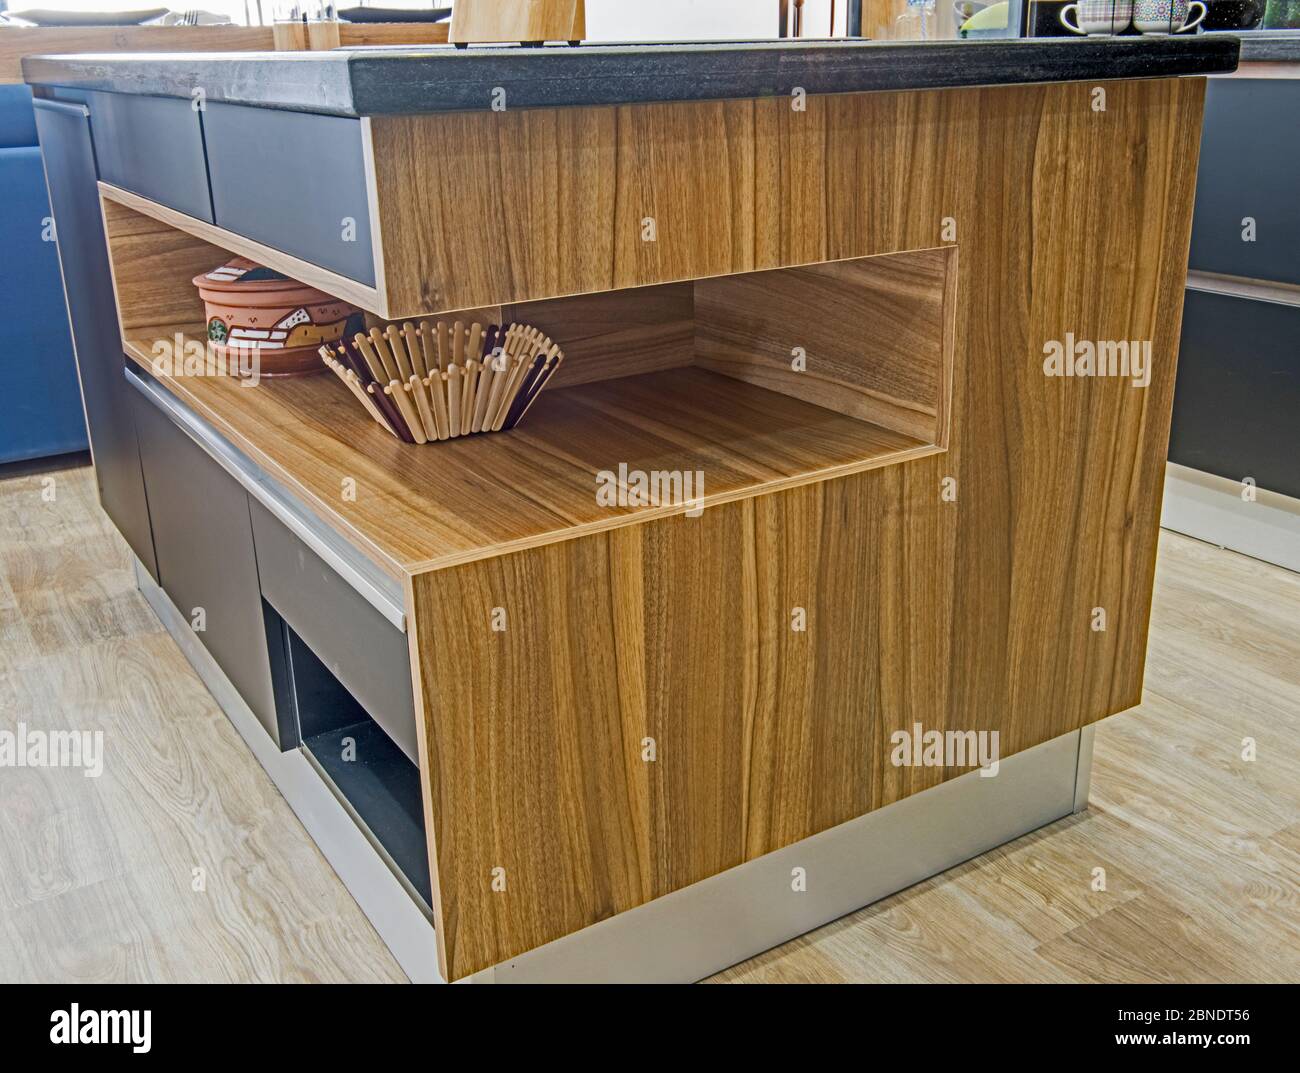 Décoration intérieure, cuisine moderne îlot avec étagère en bois dans la salle d'exposition d'appartements de luxe Banque D'Images